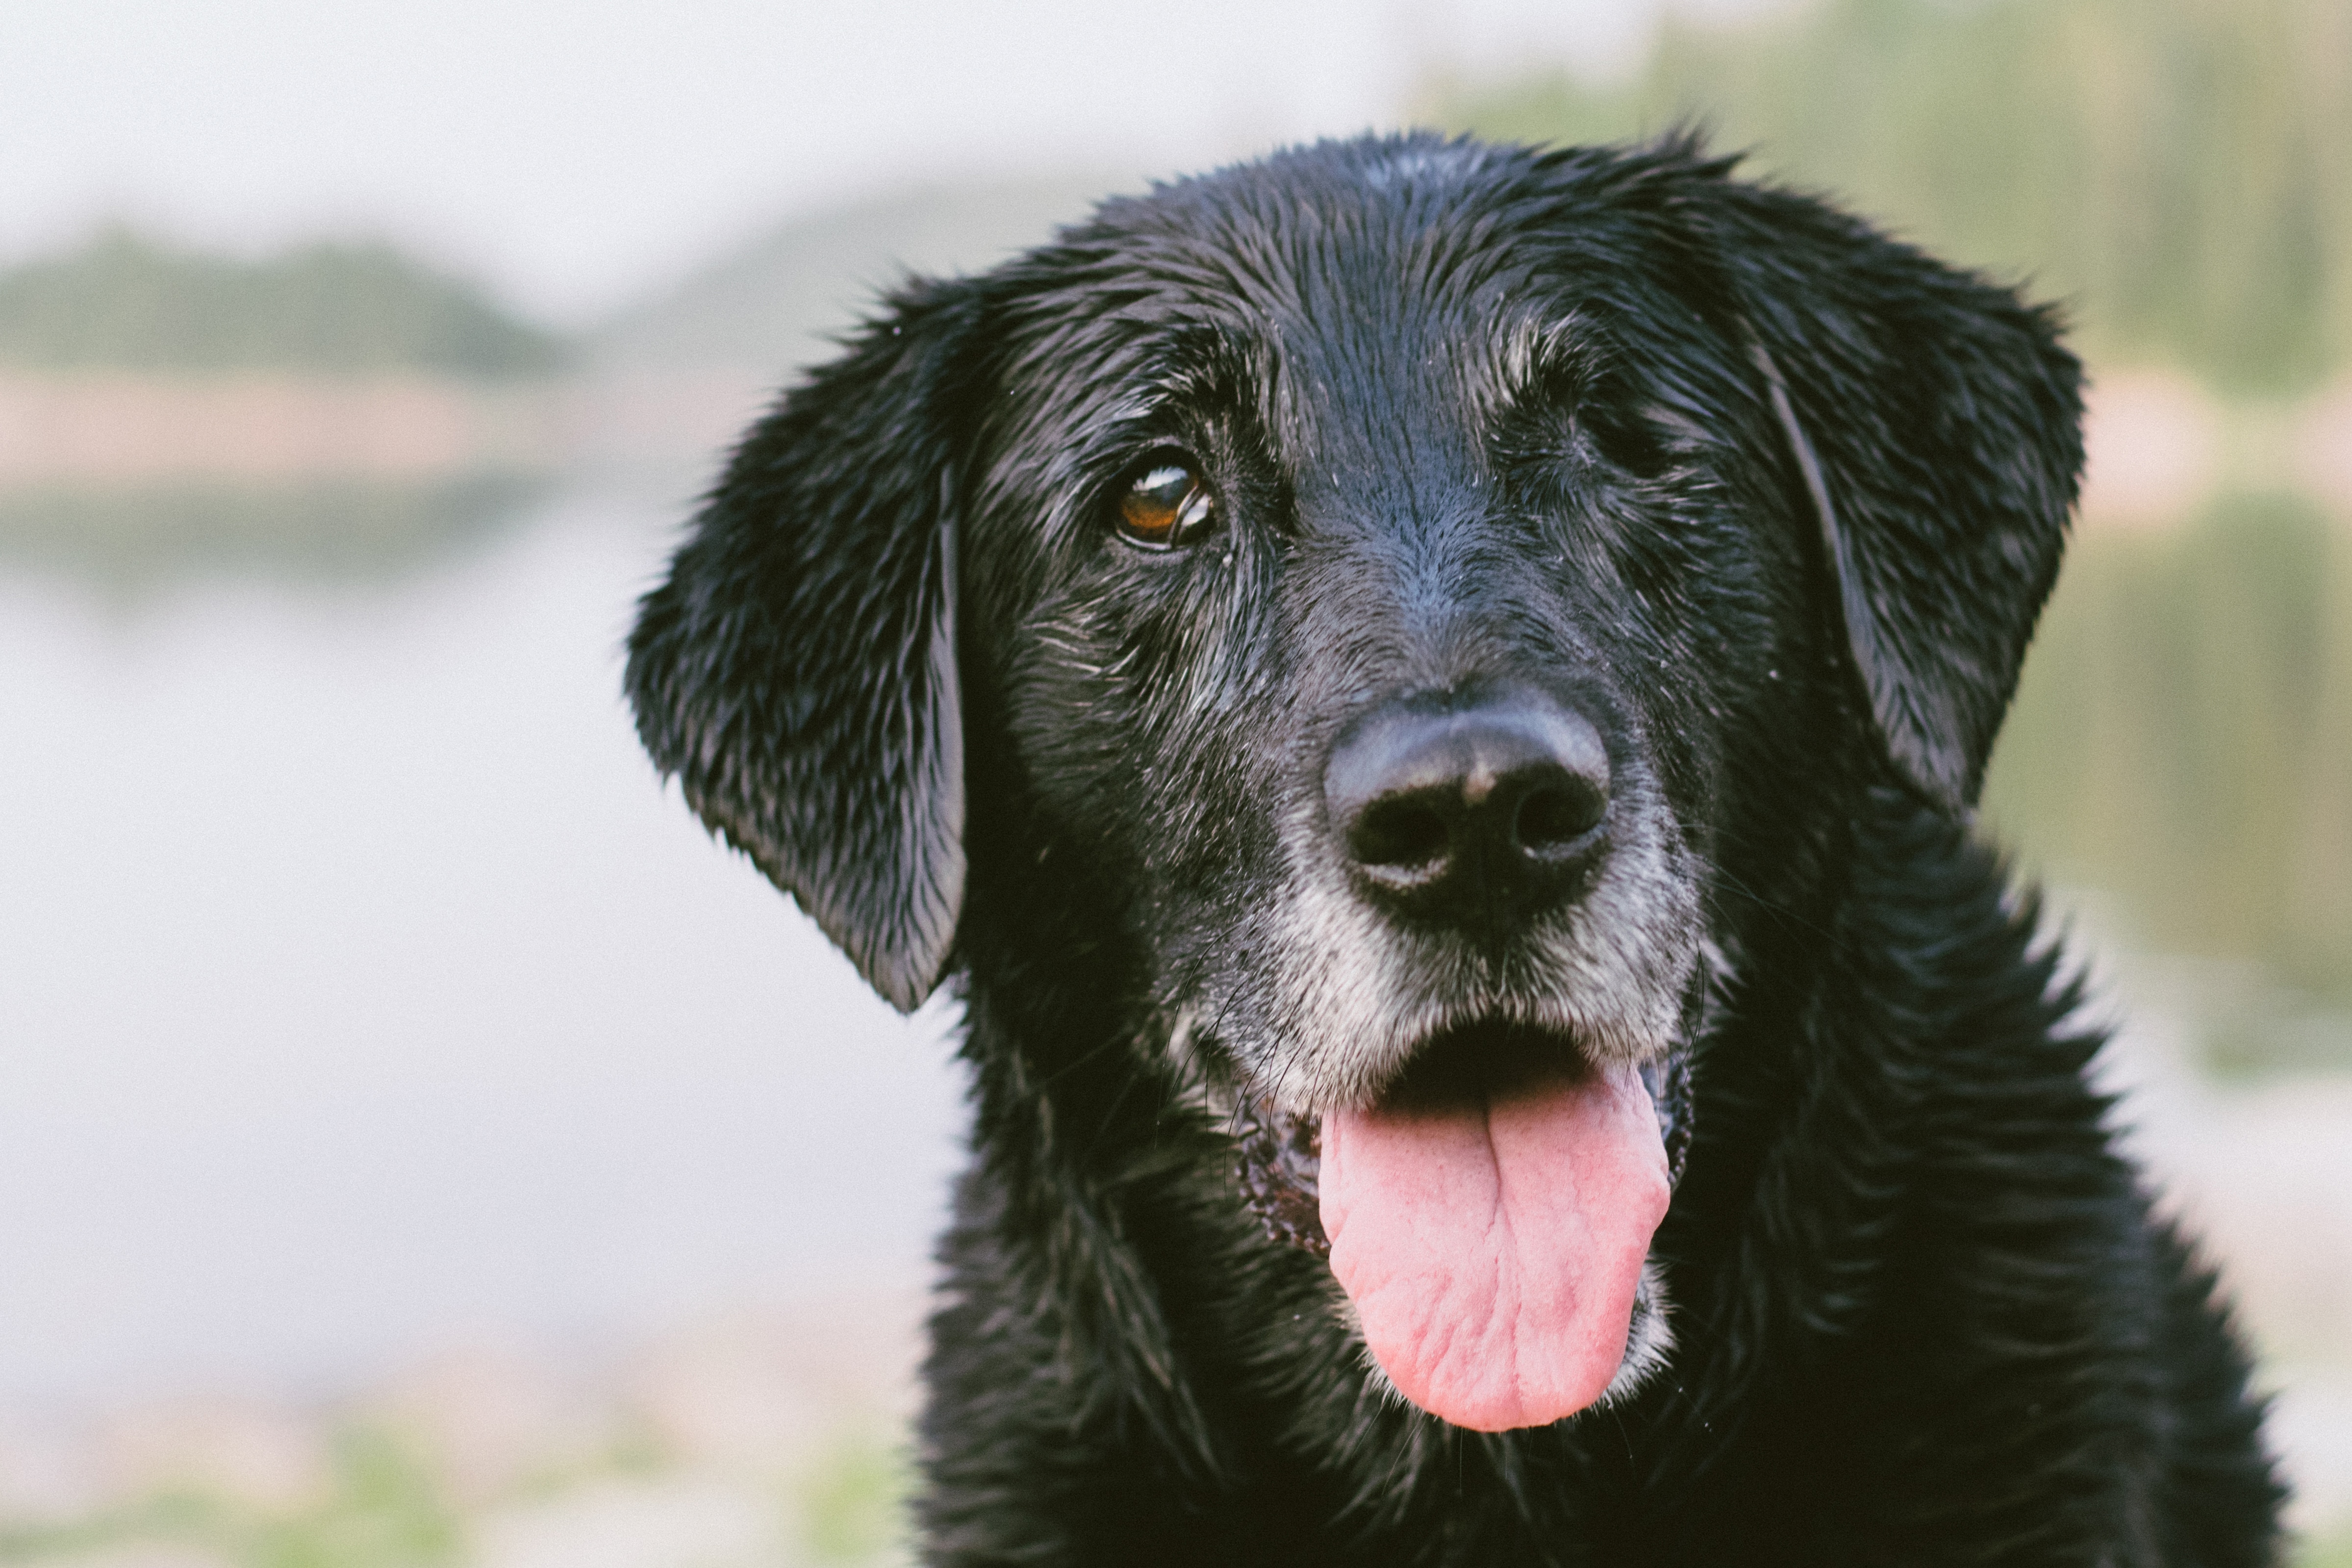 black coated medium breed dog